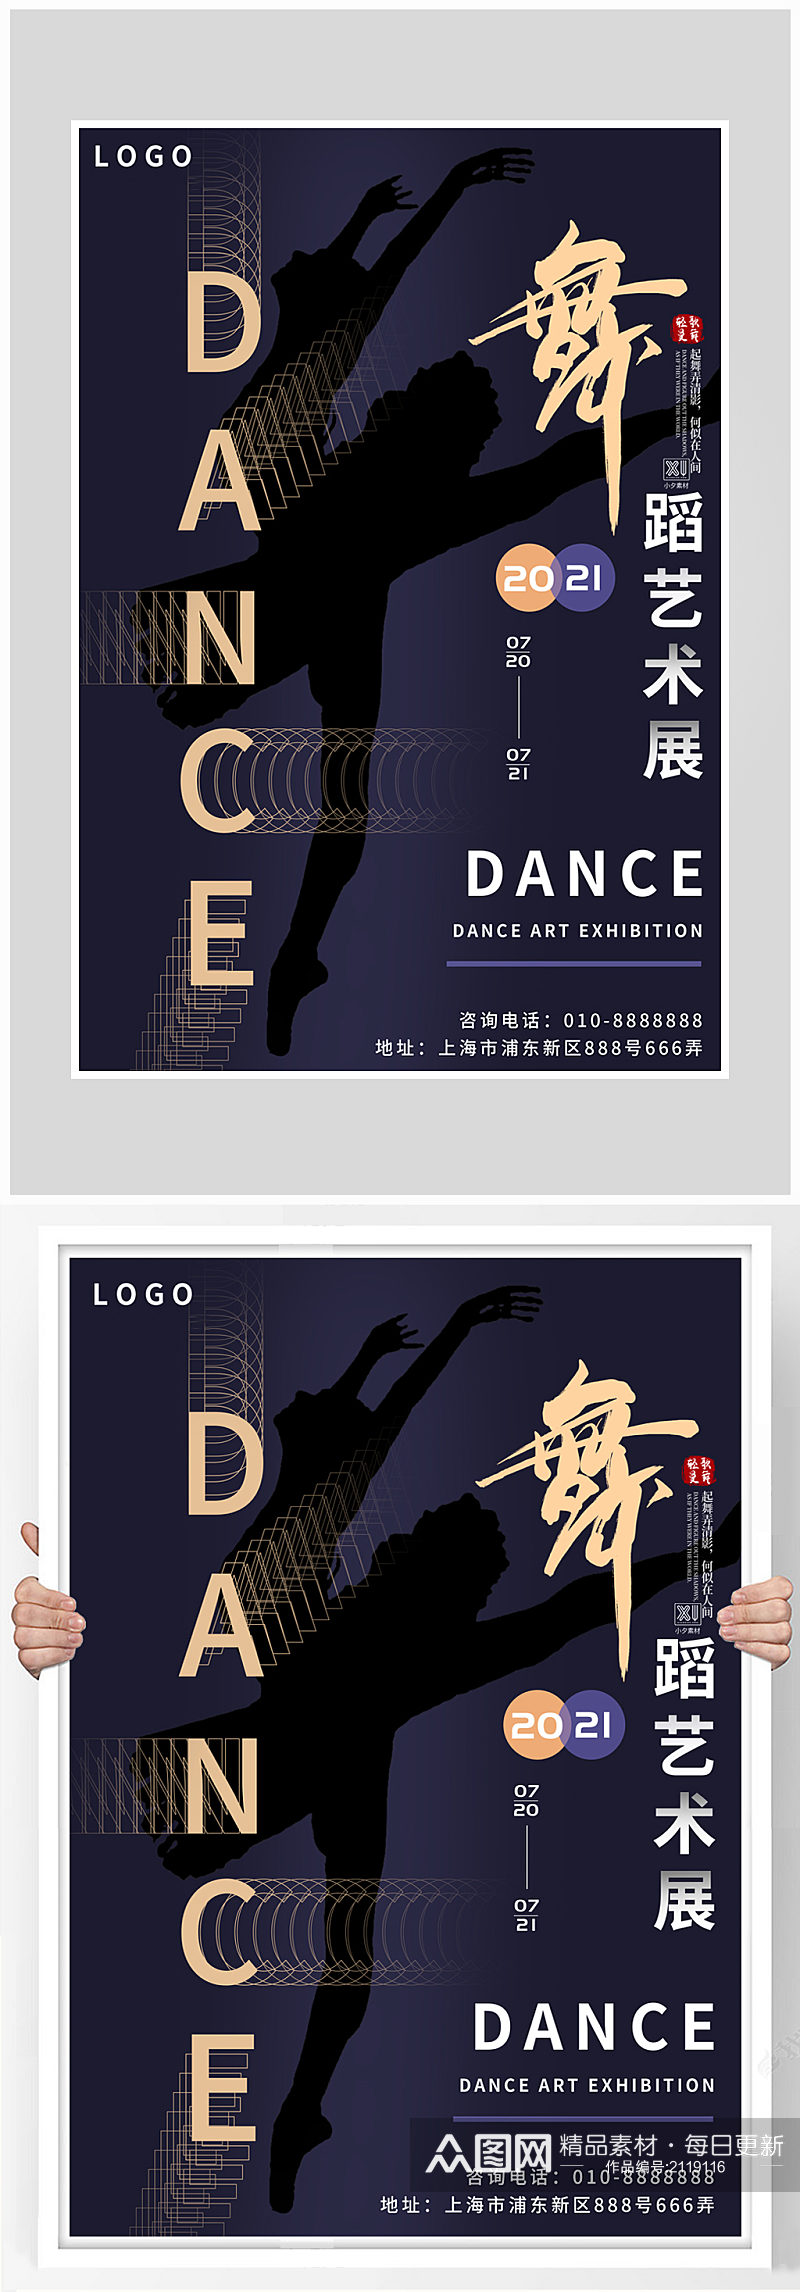 创意质感舞蹈艺术海报设计素材